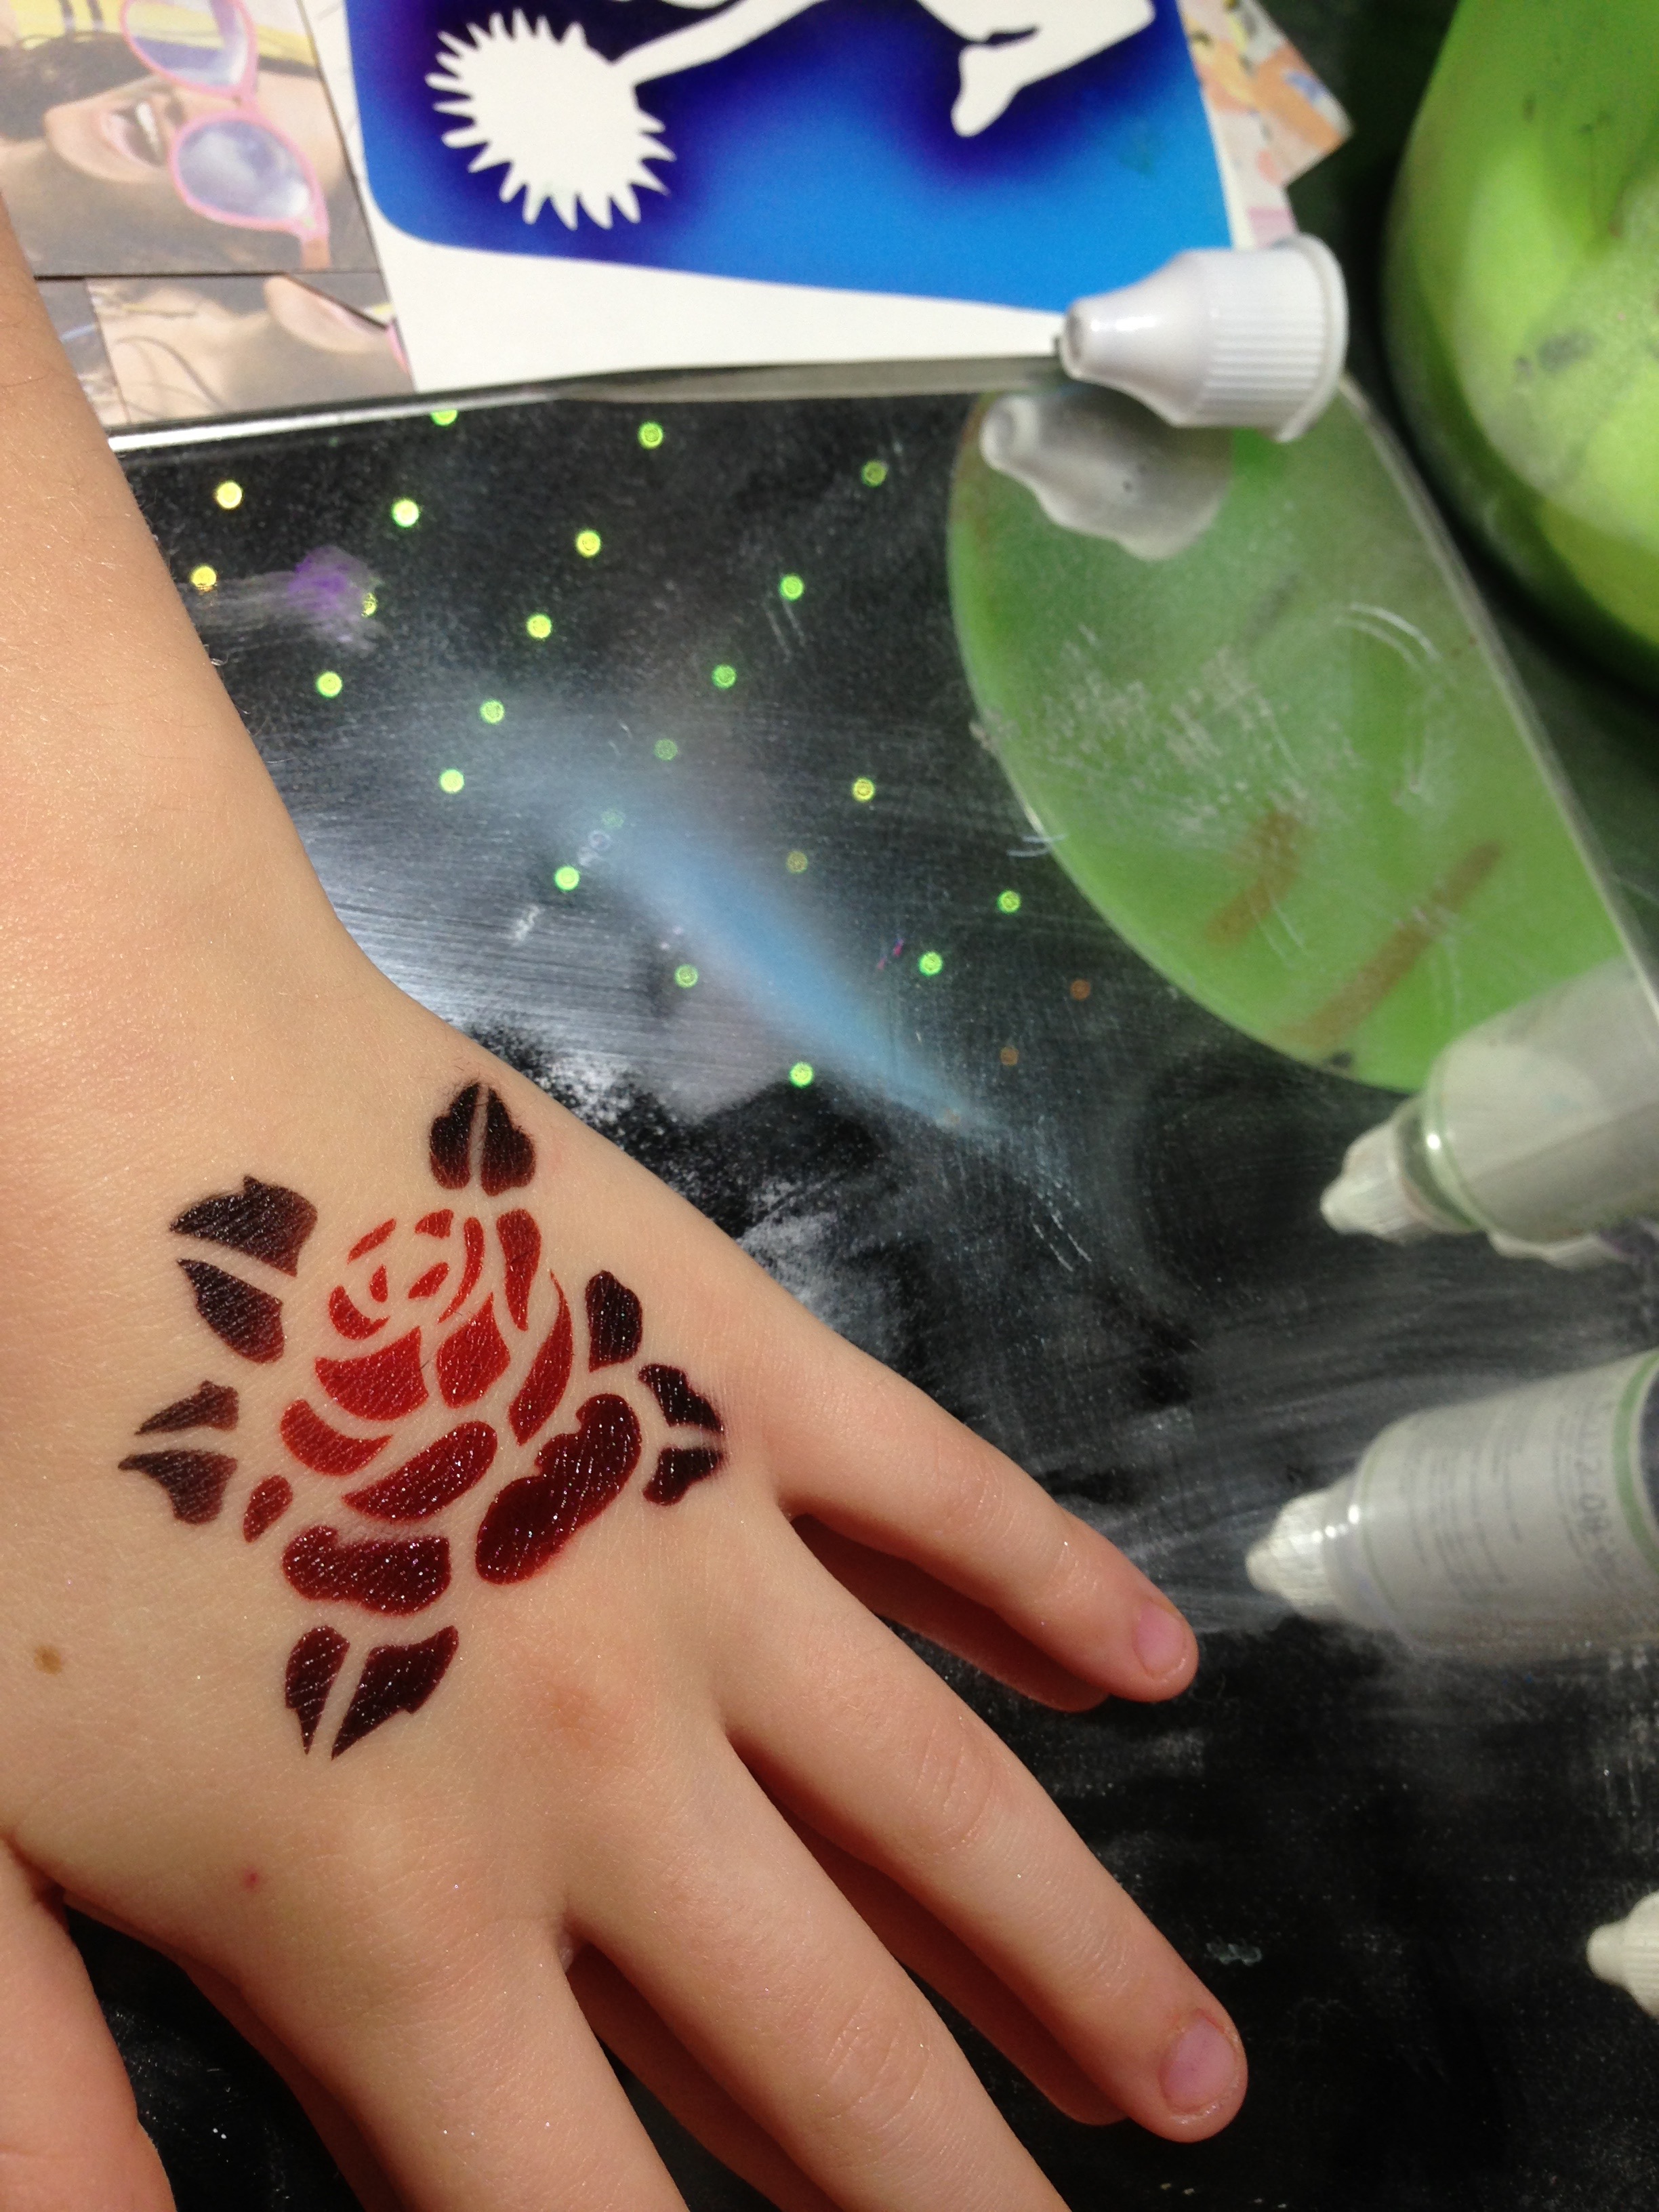 Gallery - Airbrush Tattoo rose hand.jpg